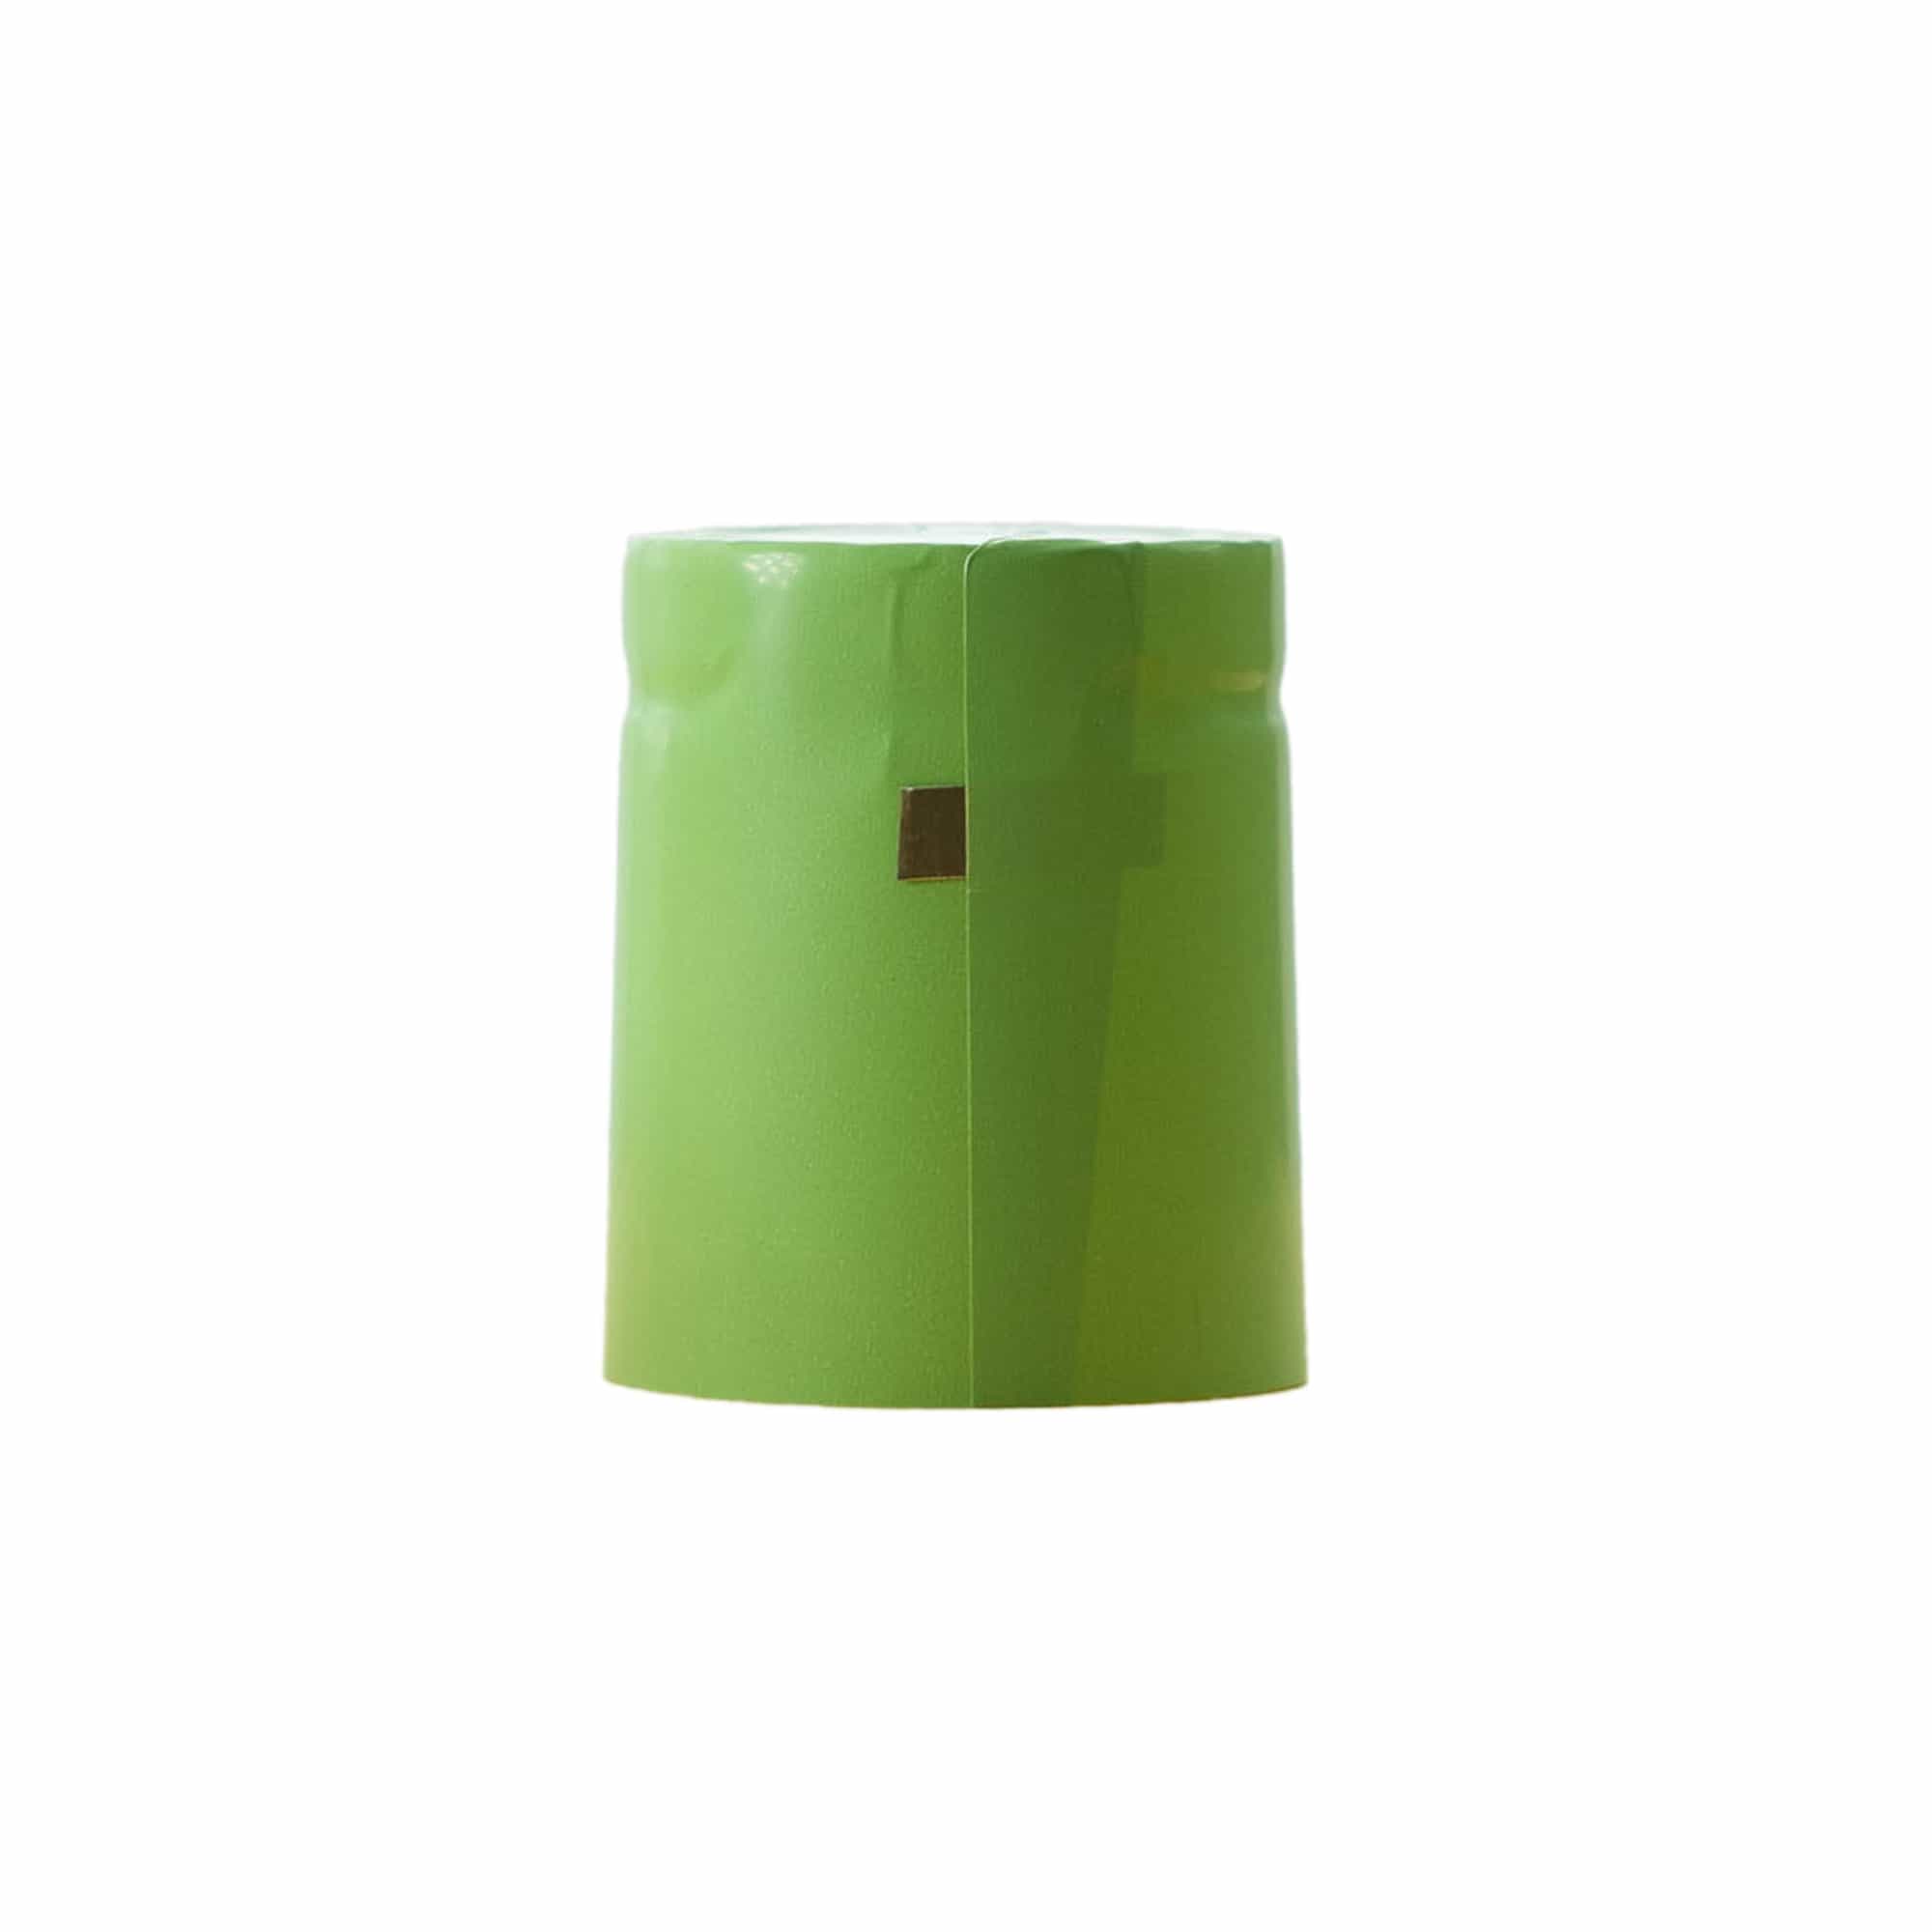 Smršťovací kapsle 32x41, plast PVC, limetkově zelená